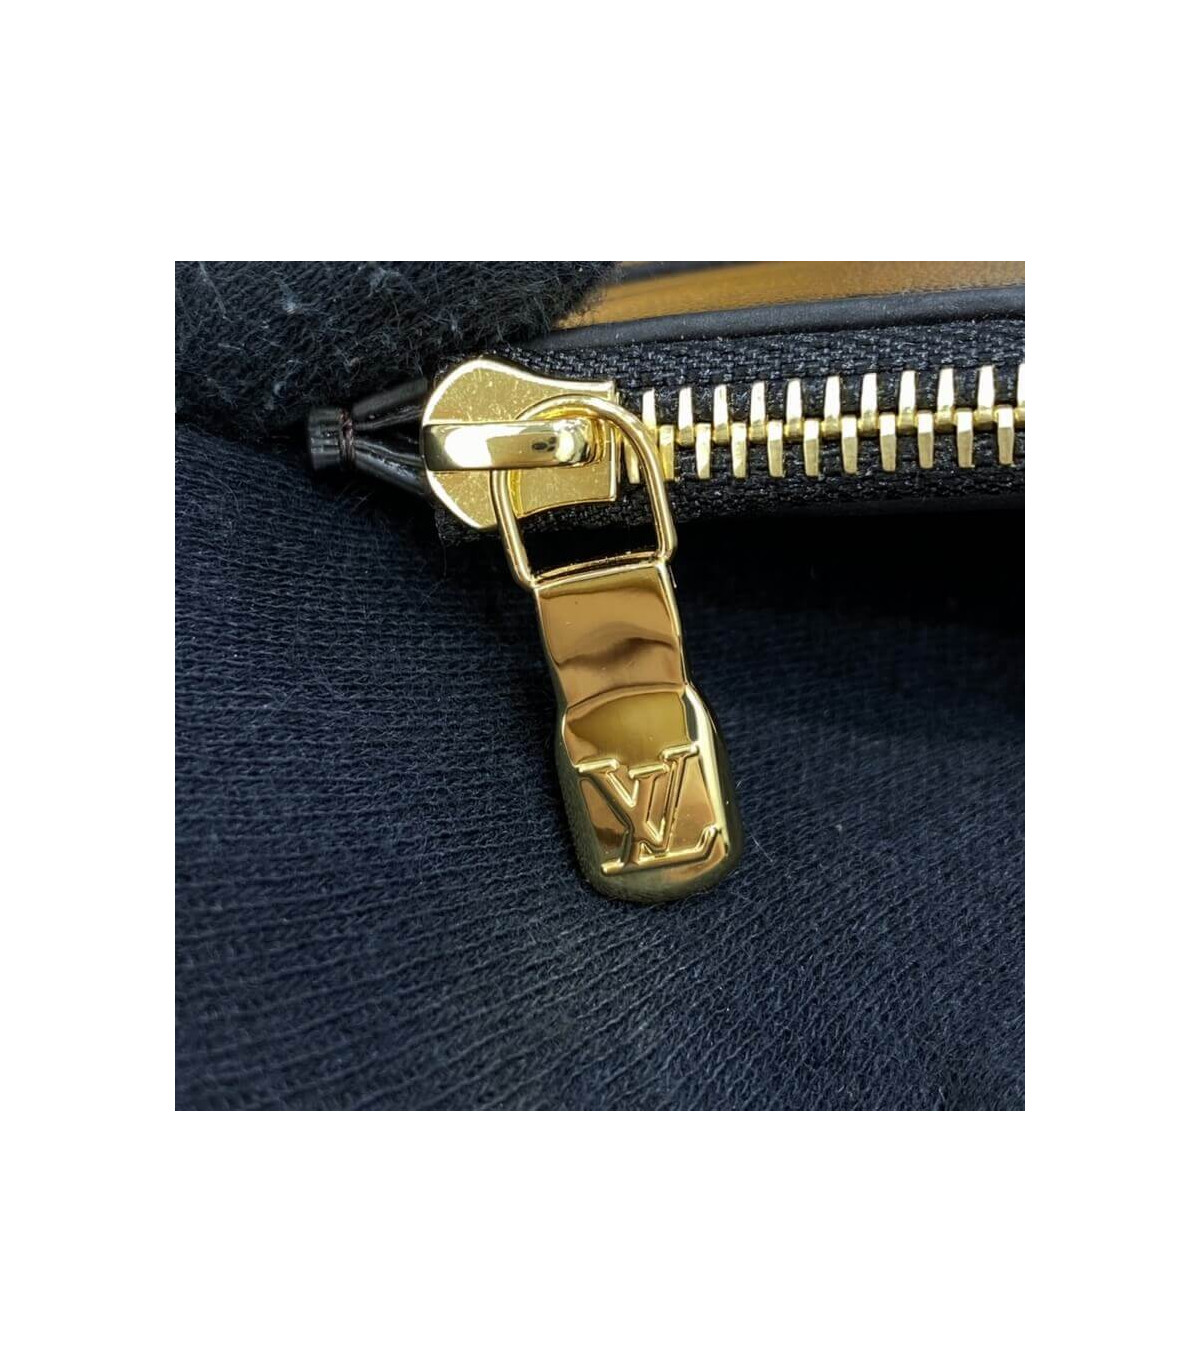 Shop Louis Vuitton MONOGRAM Slim purse (M80348, M80390) by SpainSol